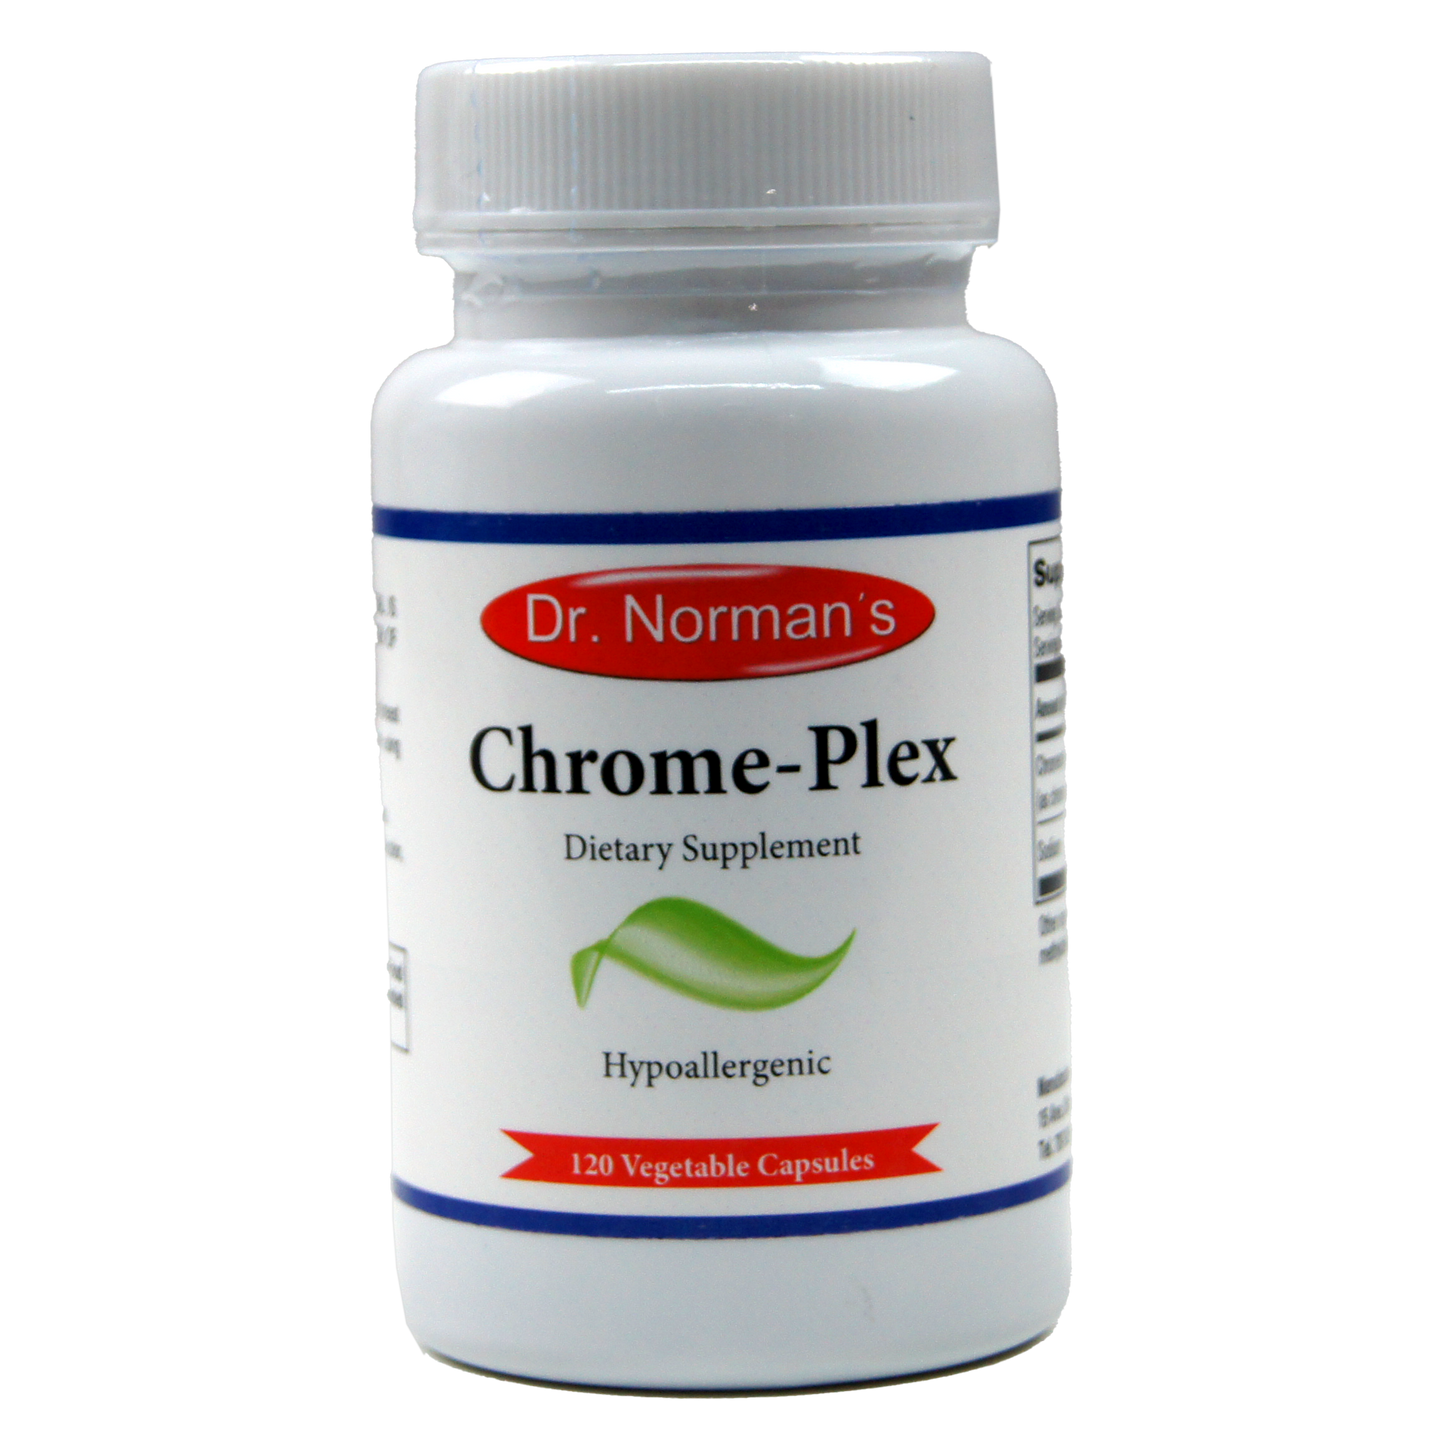 Dr. Norman's Chrome-Plex